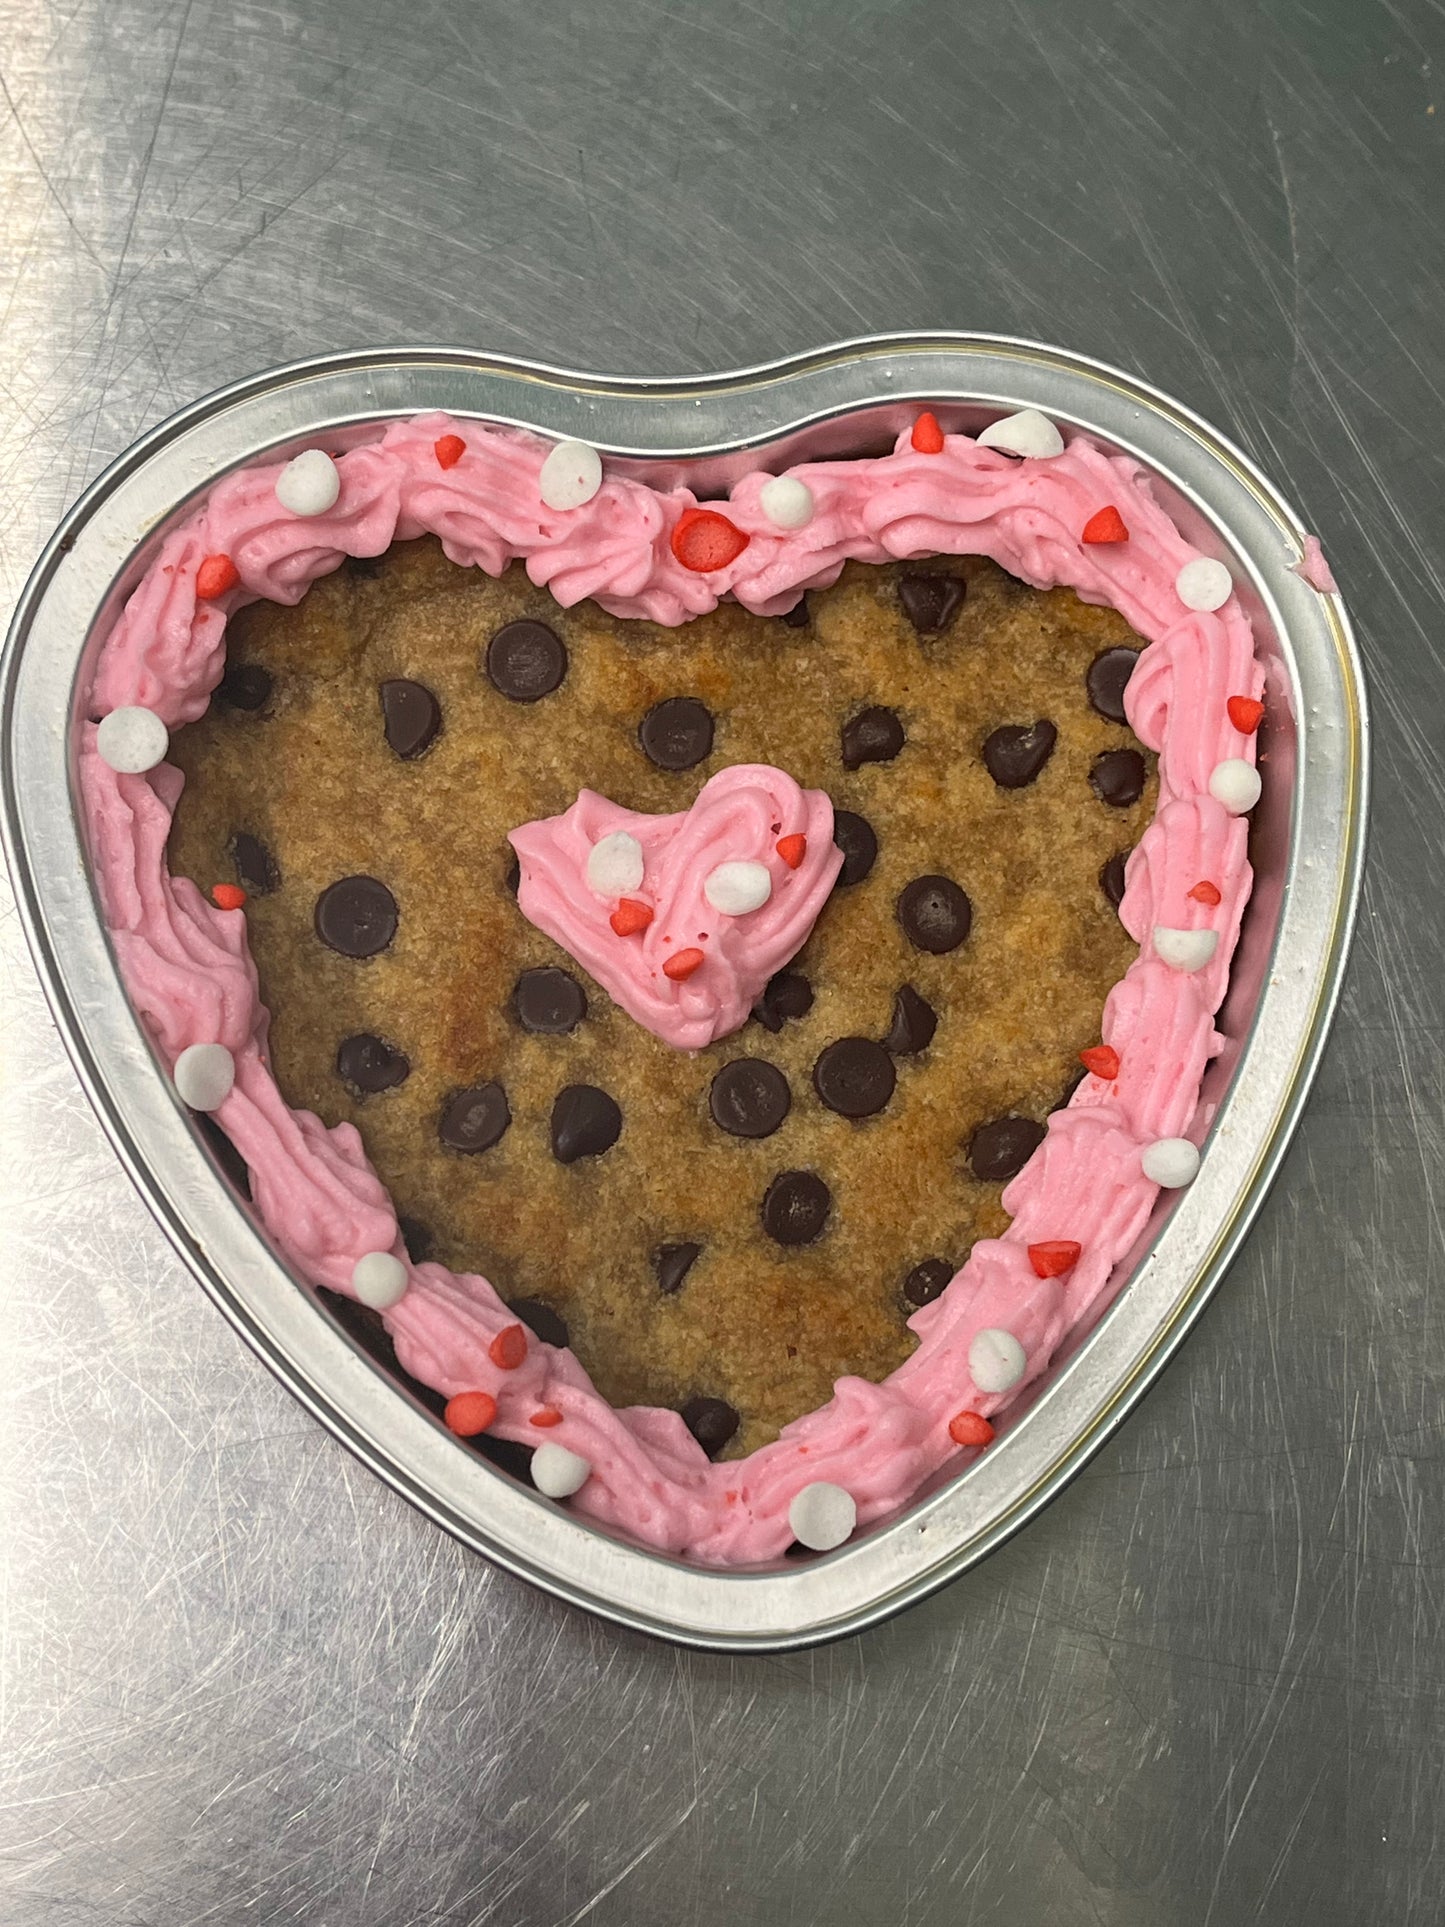 Valentine's Cookie Cake